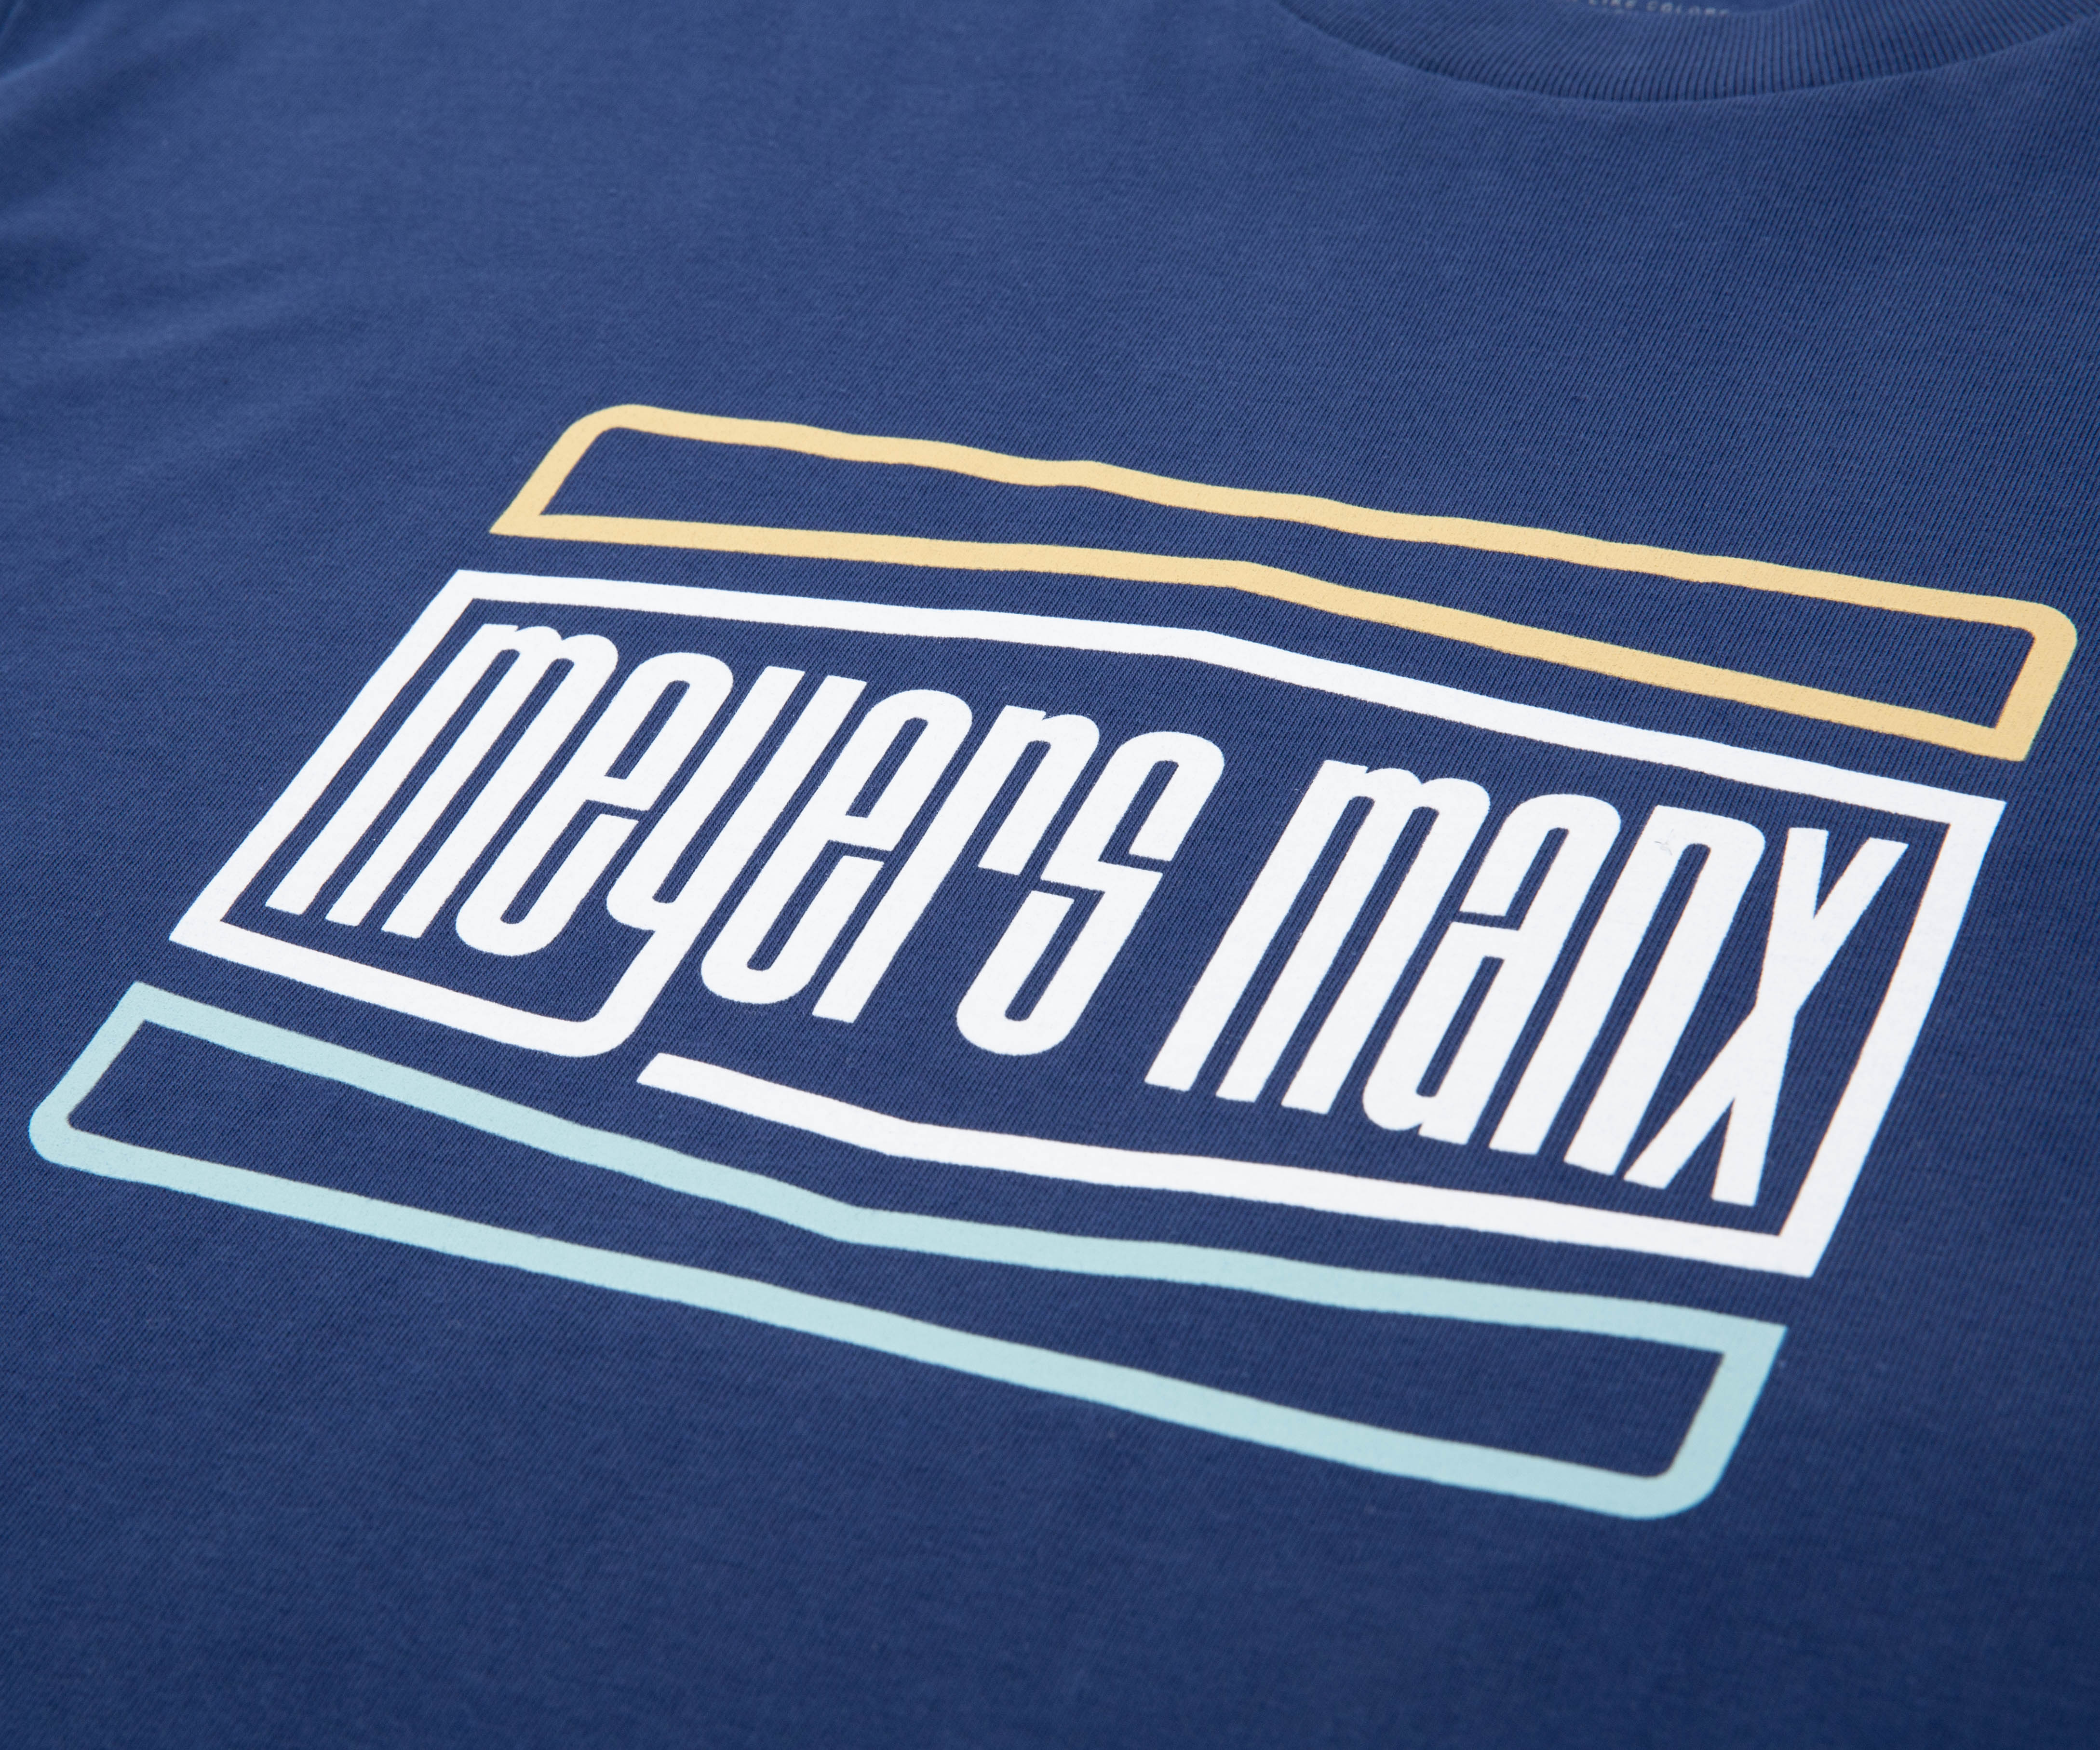 Meyers Manx Blue Rectangular Logo T-Shirt